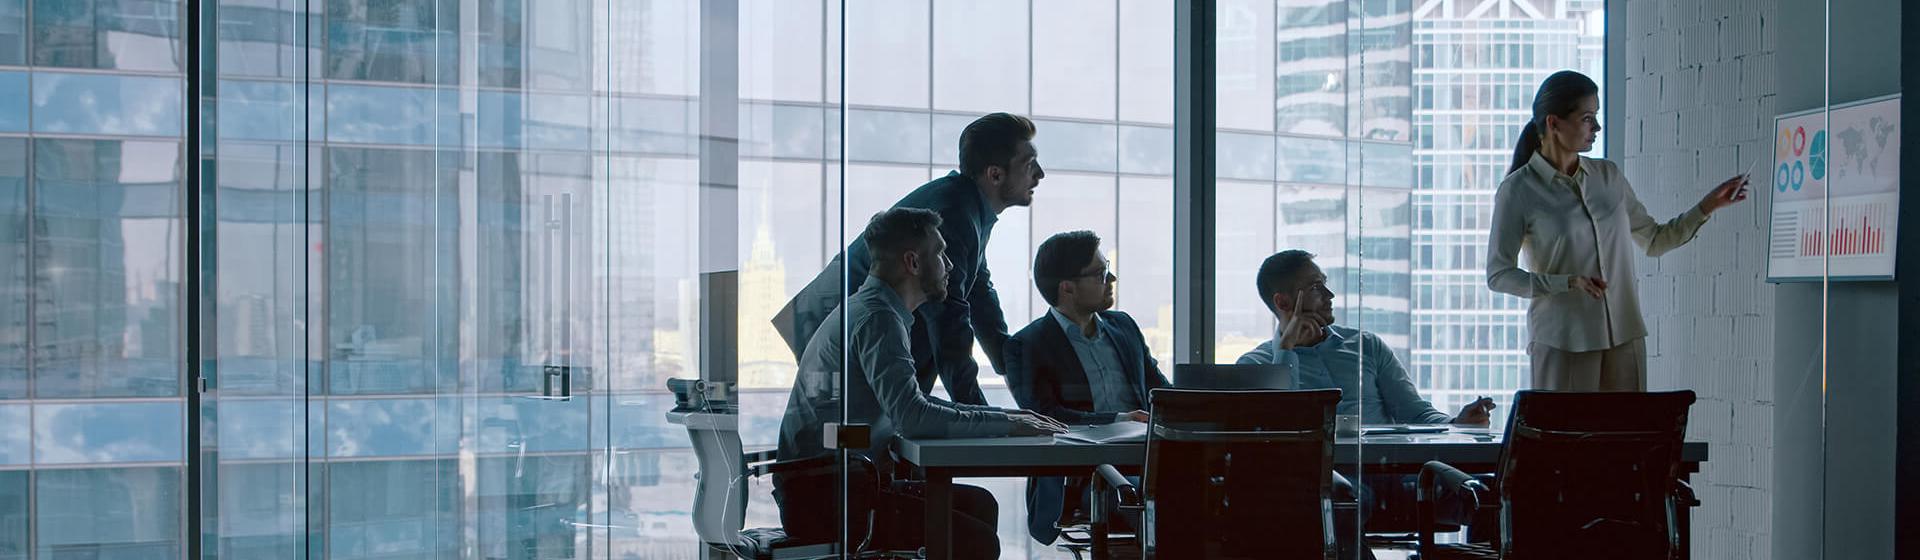 Une salle de bureau en verre, avec une employée montrant des données et des graphiques de transport maritime sur un écran accroché au mur, avec trois hommes assis à table qui regardent l’écran. Un quatrième homme se tient debout et regarde également l’écran.